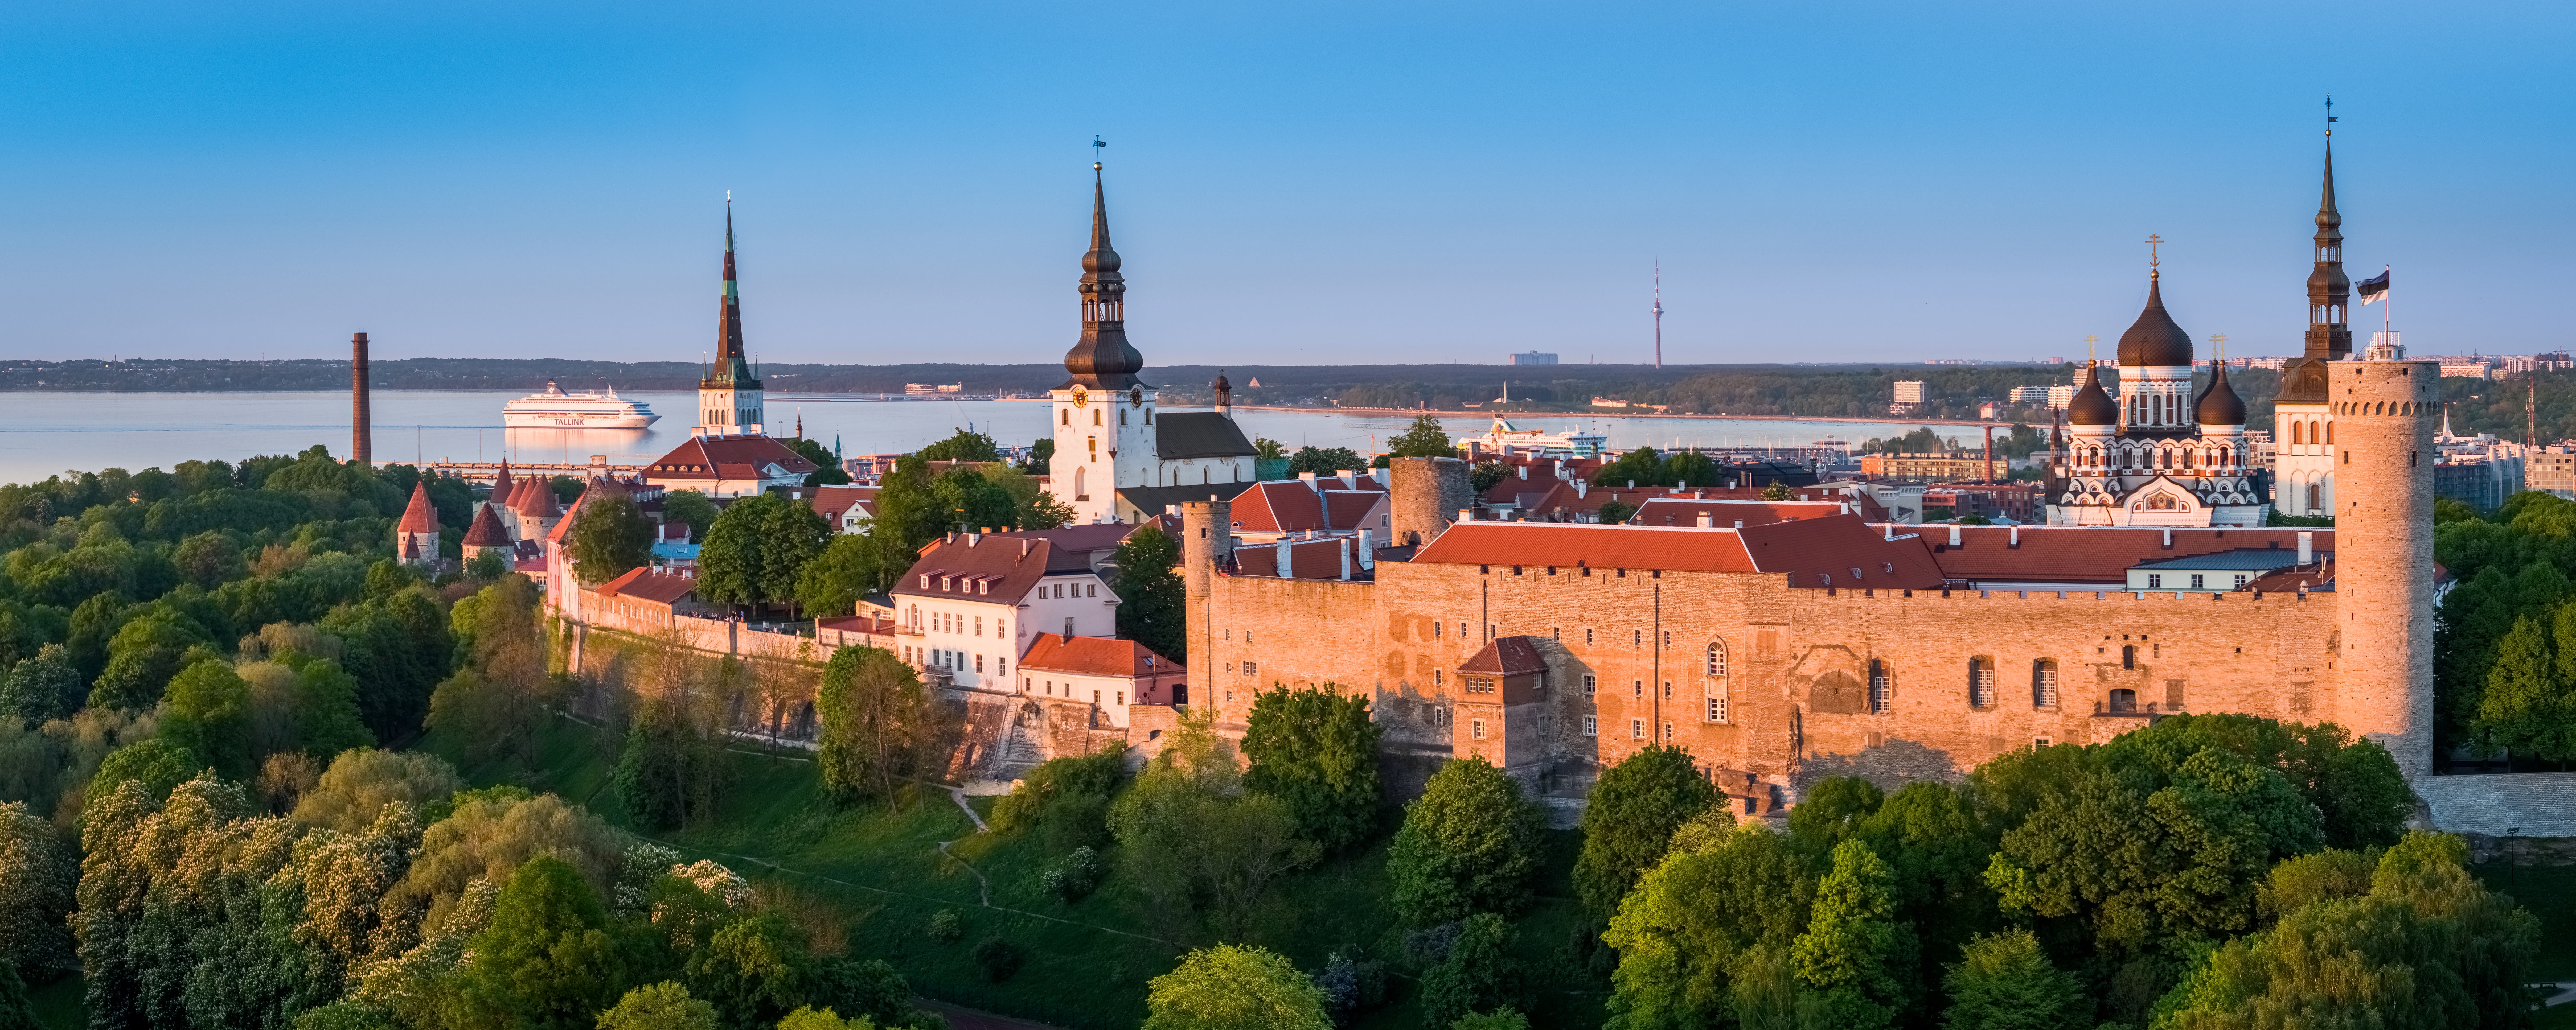 Old town Tallinn